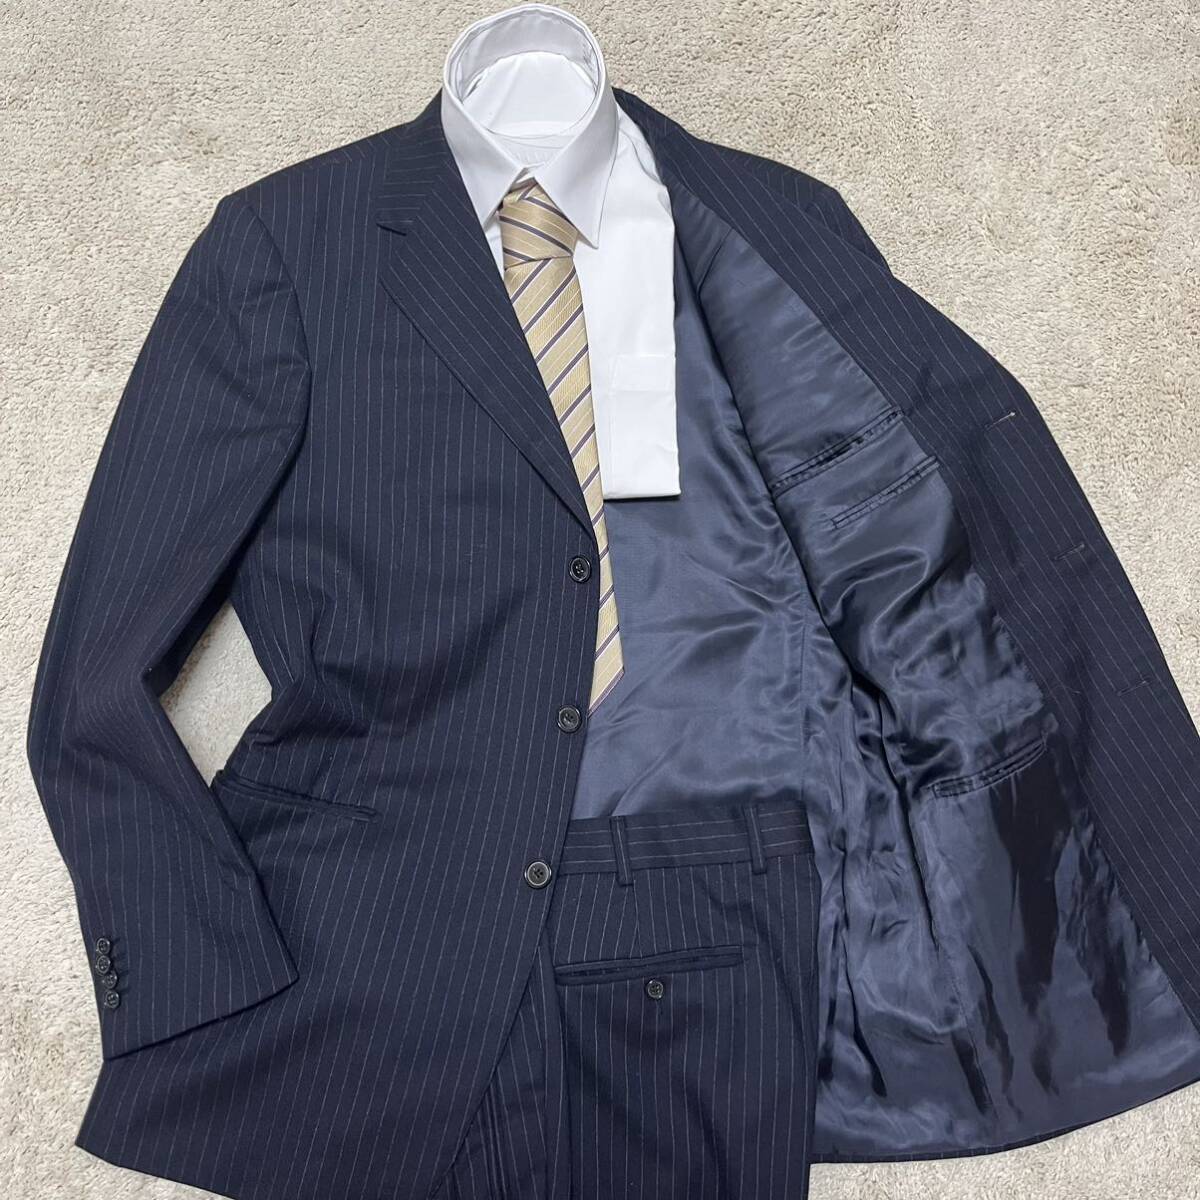 XXL! エルメネジルドゼニア 『紳士の嗜み』 Zegna SU MISURA スーツ セットアップ ジャケット ネイビー 紺 大きいサイズ 52_画像1